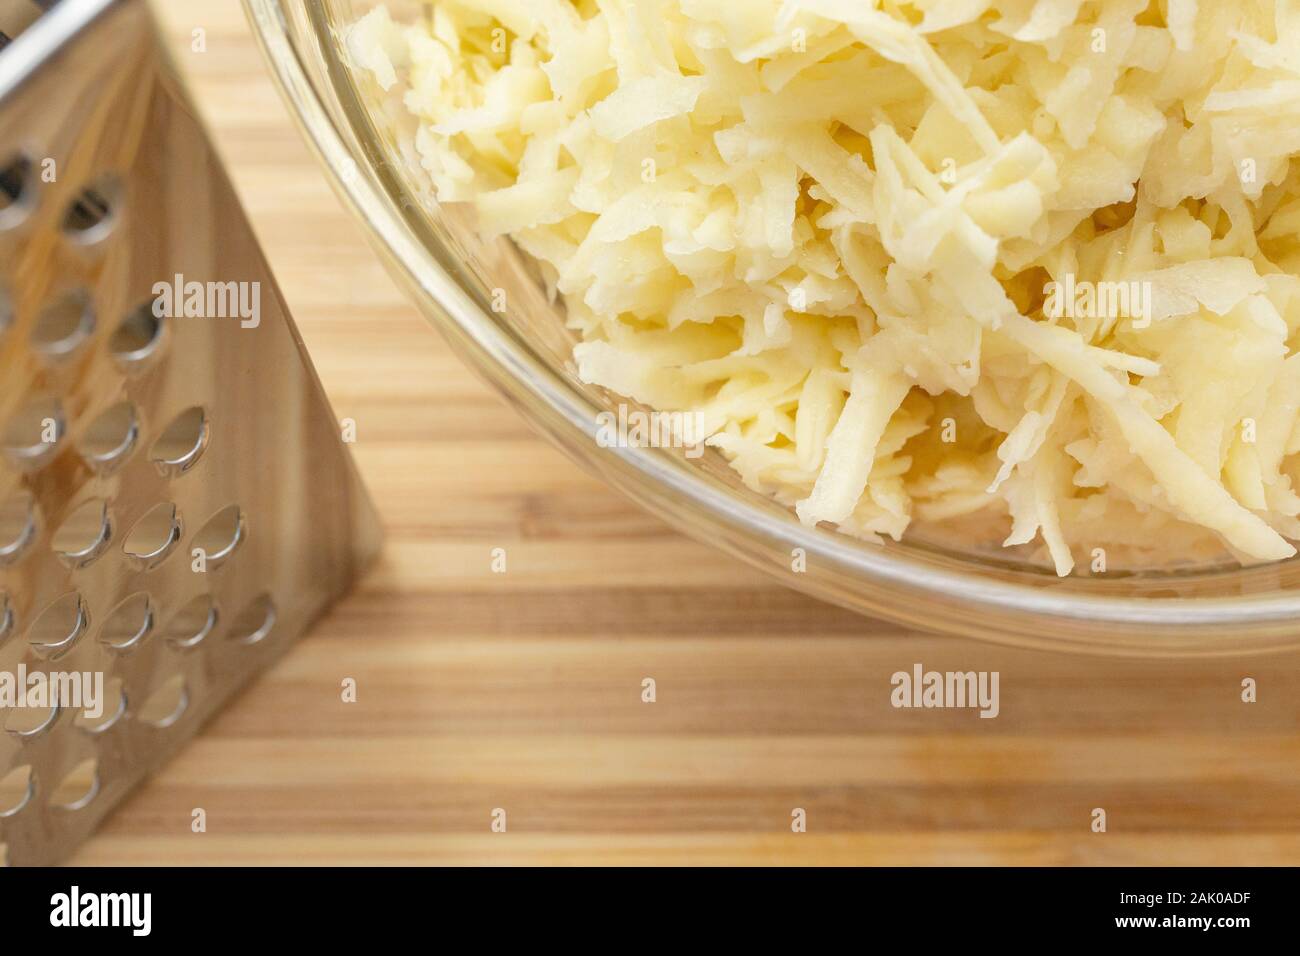 Vue en grand angle des pommes de terre râpées dans un bol sur le comptoir pendant la préparation des aliments Banque D'Images